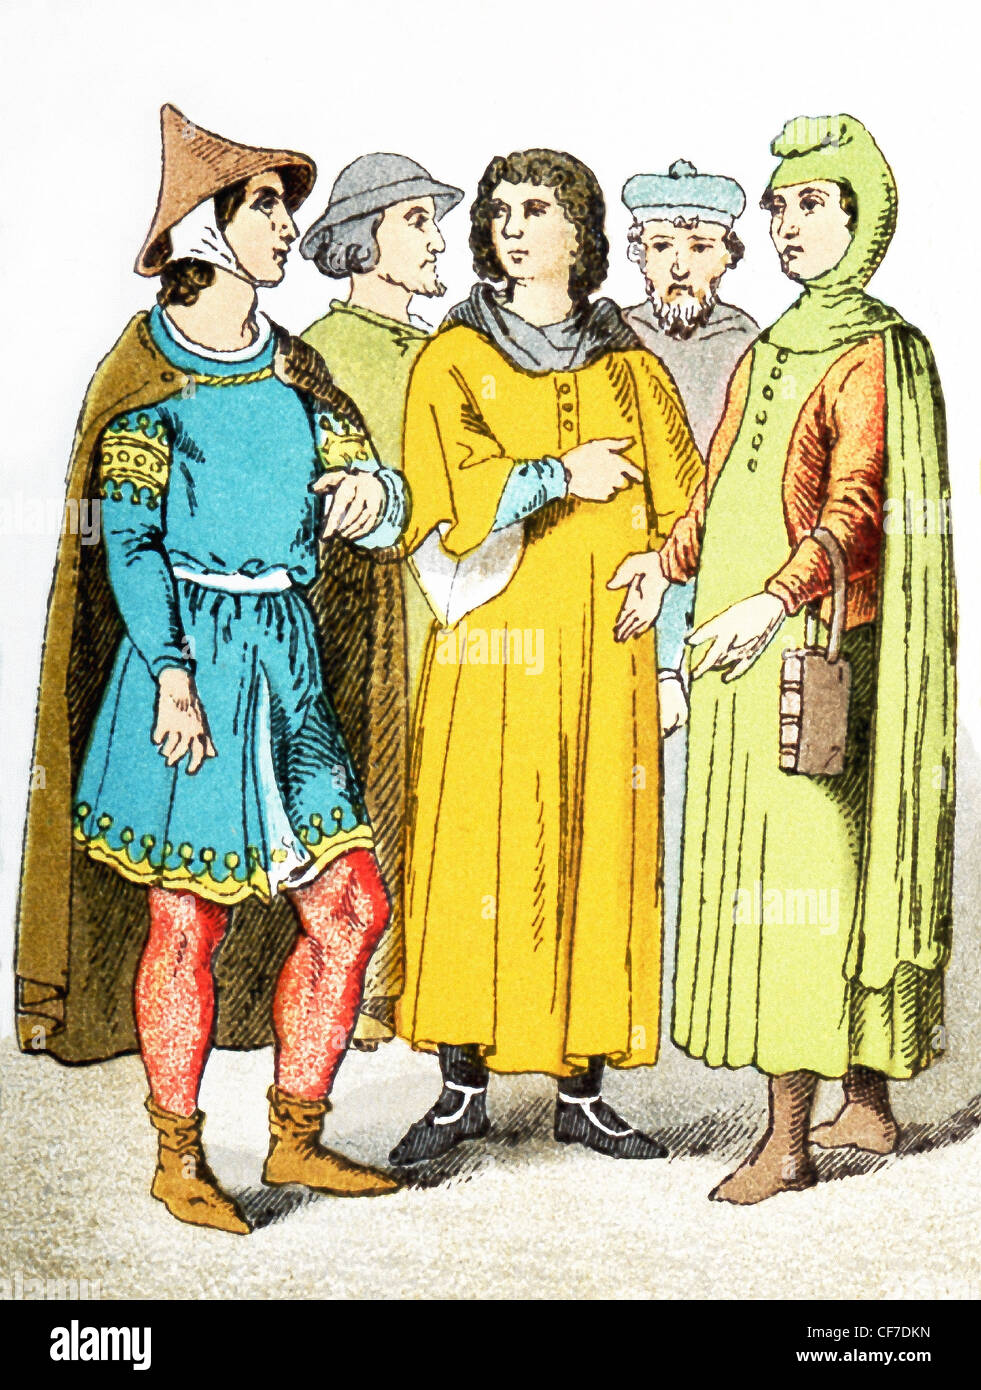 Les chiffres de l'illustration représentent cinq citoyens français autour de l'an 1200. L'illustration dates à 1882. Banque D'Images